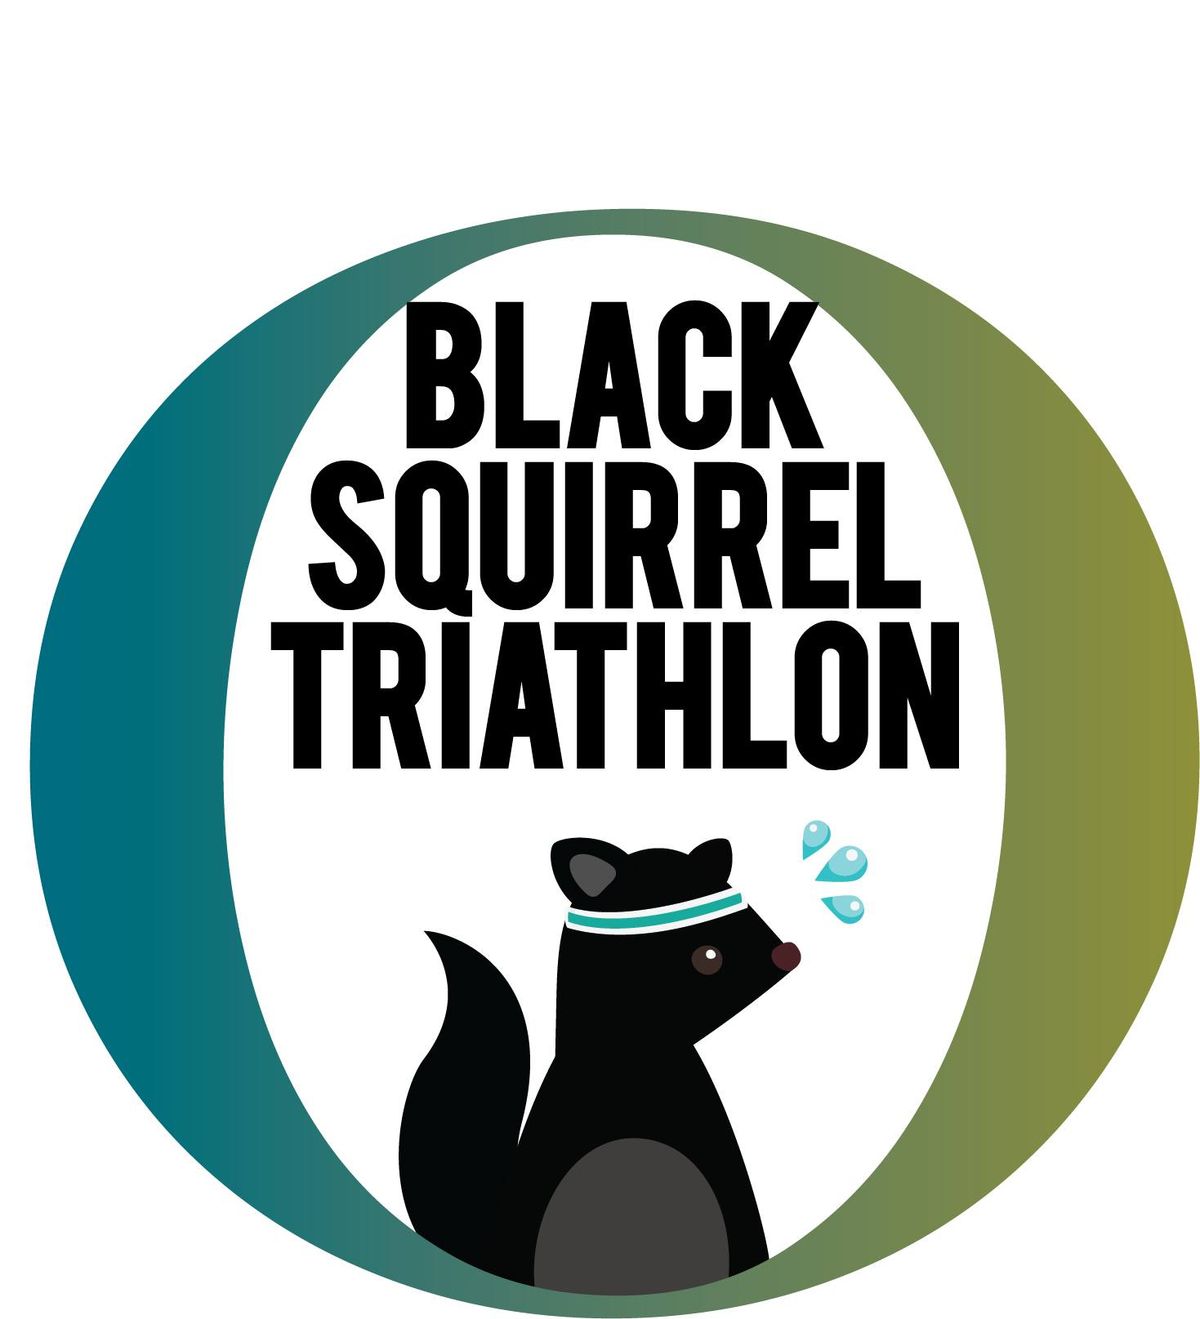 Black Squirrel Triathlon